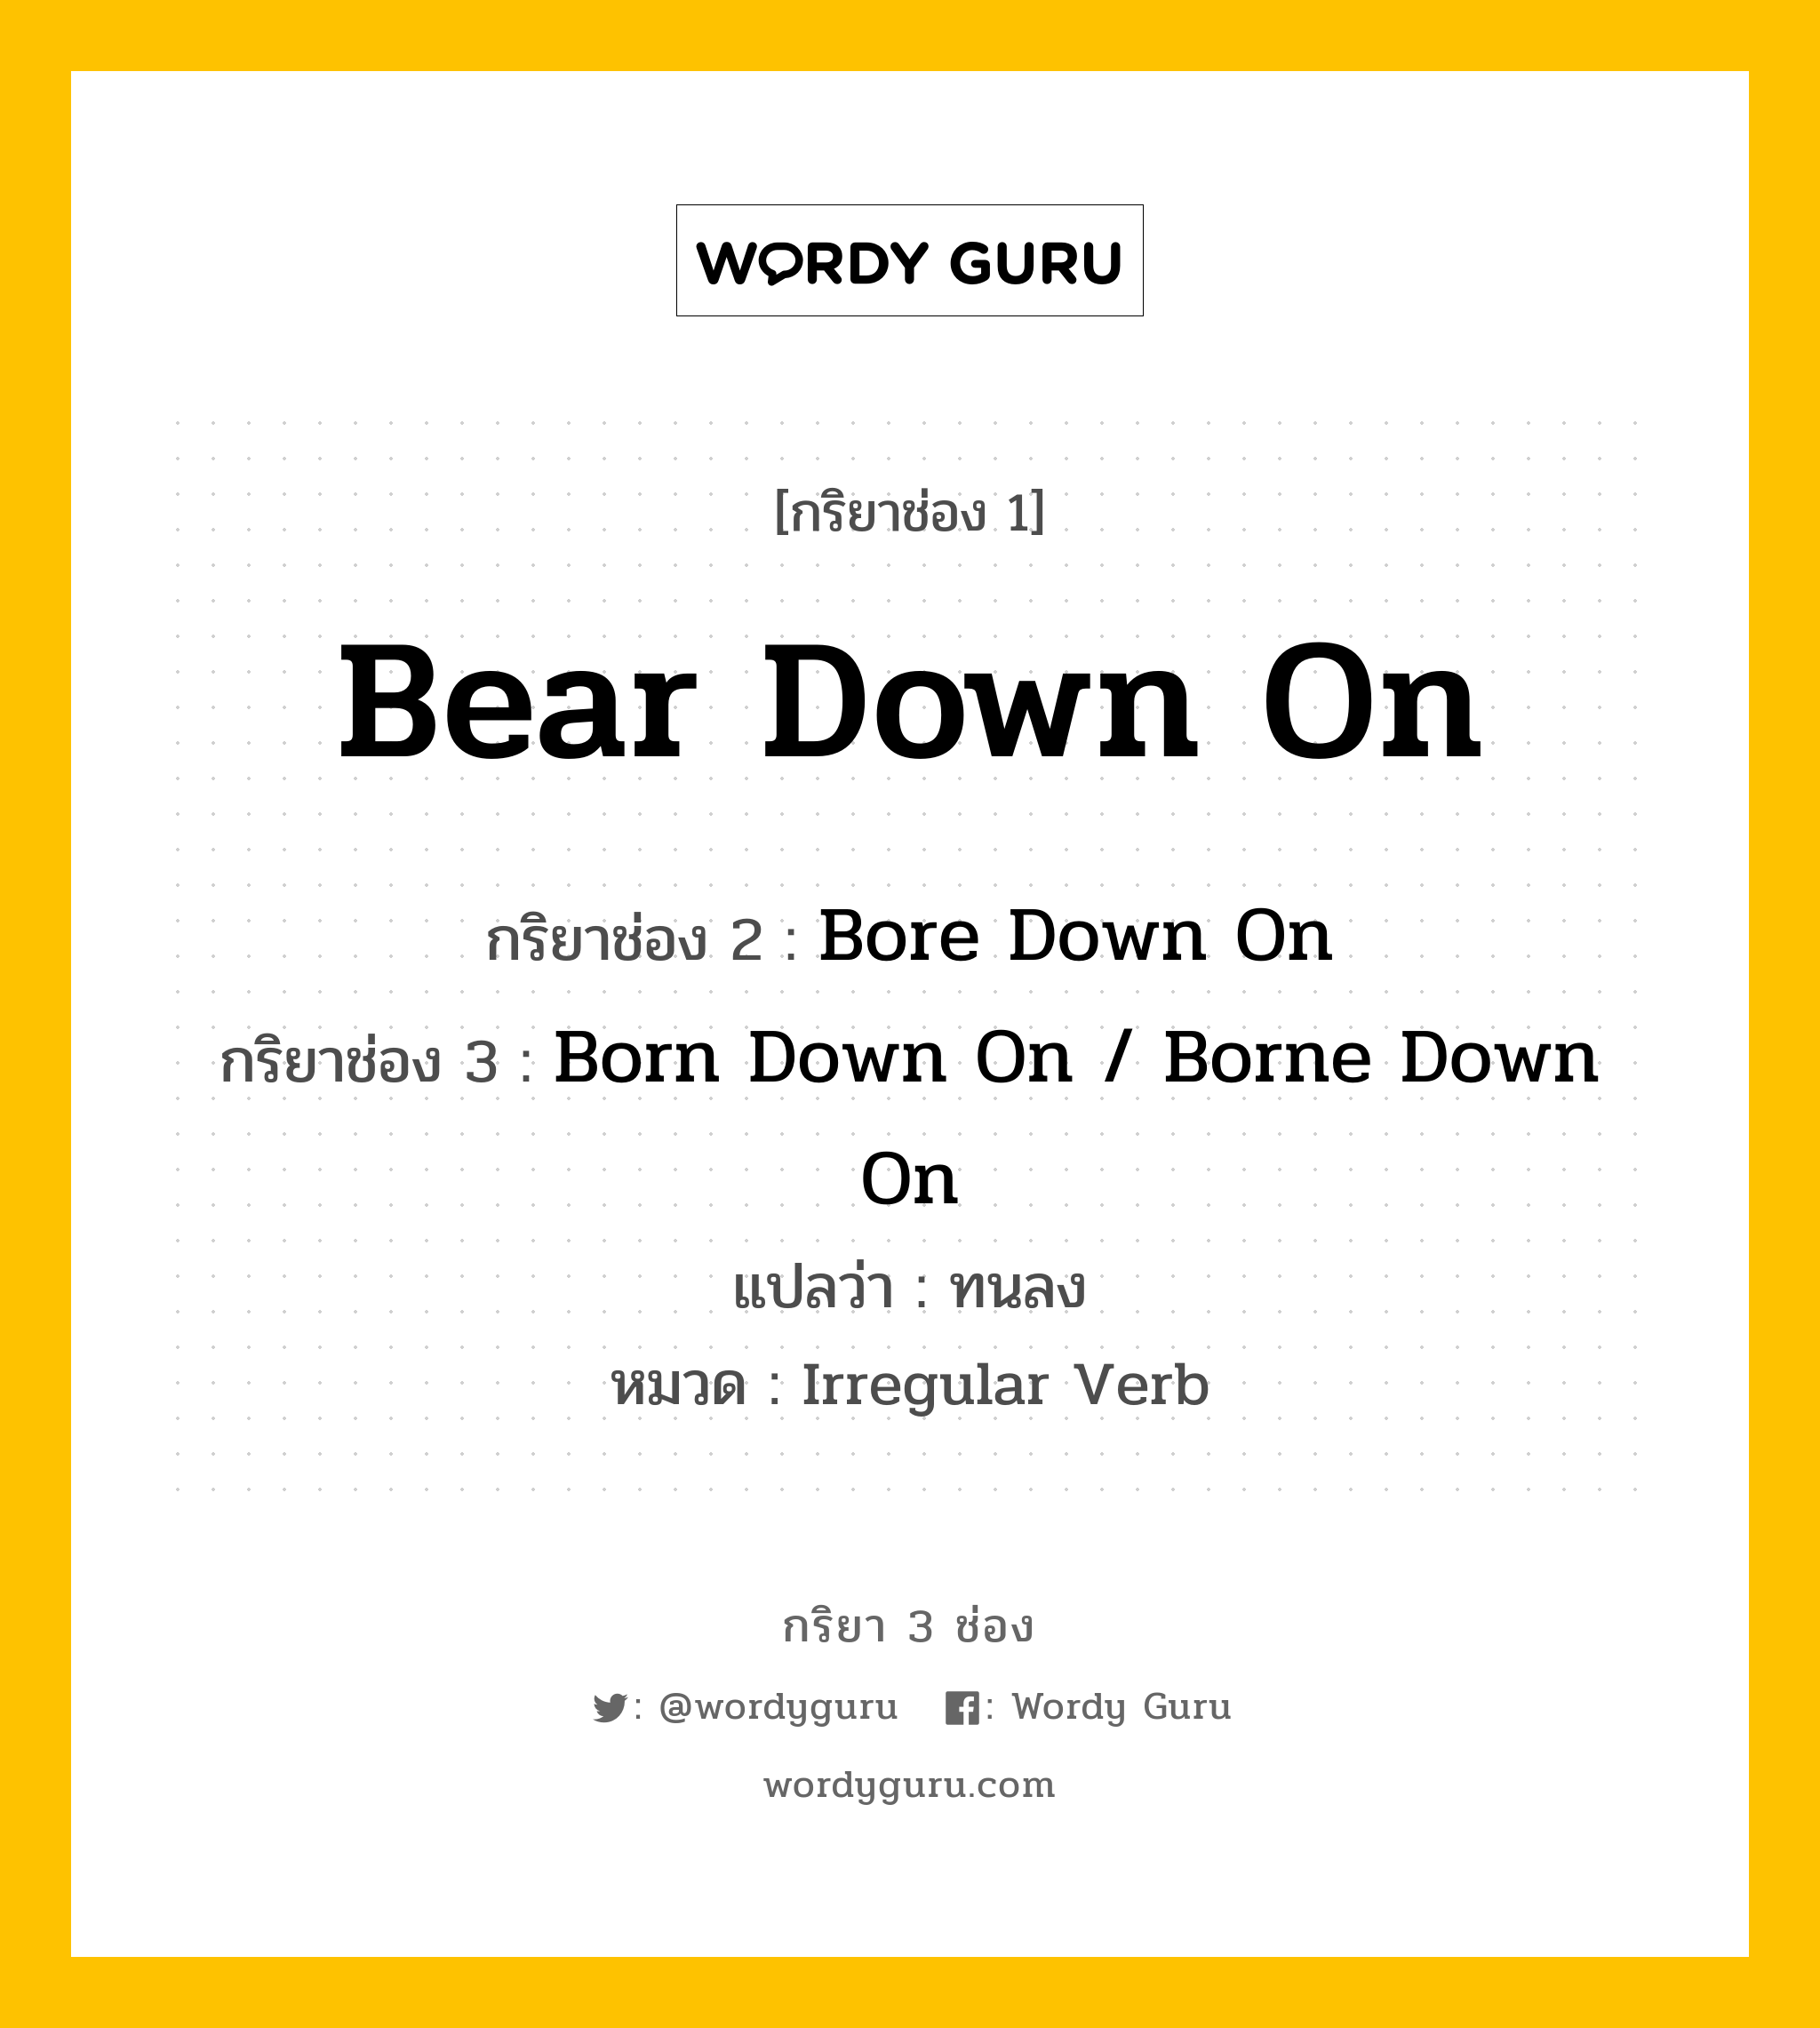 Bear Down On มีกริยา 3 ช่องอะไรบ้าง? คำศัพท์ในกลุ่มประเภท Irregular Verb, กริยาช่อง 1 Bear Down On กริยาช่อง 2 Bore Down On กริยาช่อง 3 Born Down On / Borne Down On แปลว่า ทนลง หมวด Irregular Verb หมวด Irregular Verb